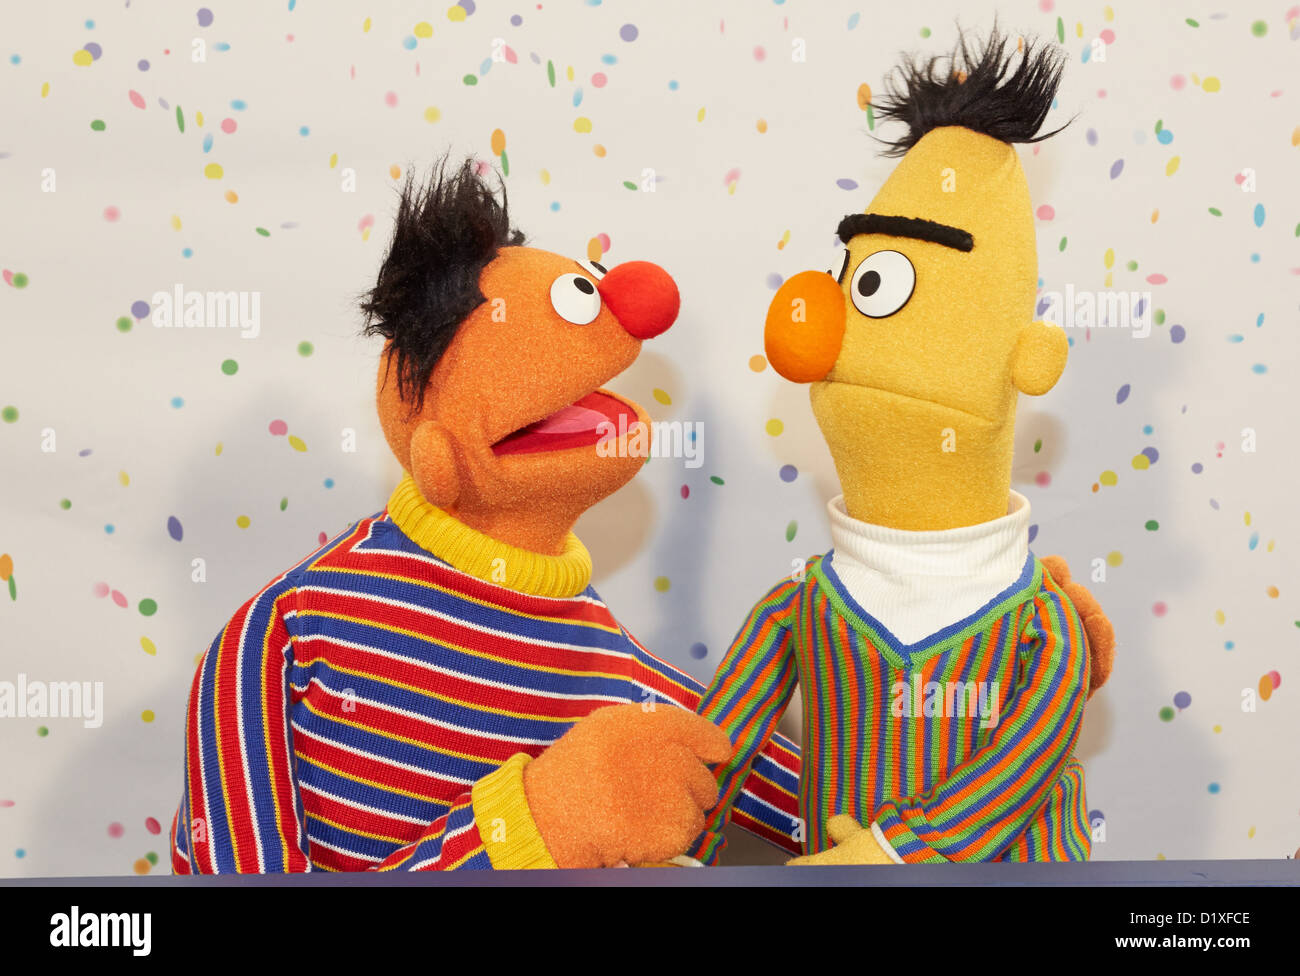 Sesame Street Muppets Ernie e Bert posa per fotografie durante una conferenza stampa per il quarantesimo anniversario di Sesame Street ad Amburgo, Germania, 07 gennaio 2013. In data 8 gennaio 1973, dei bambini serie televisiva Sesame Street ha debuttato in Germania. Foto: GEORG WENDT Foto Stock